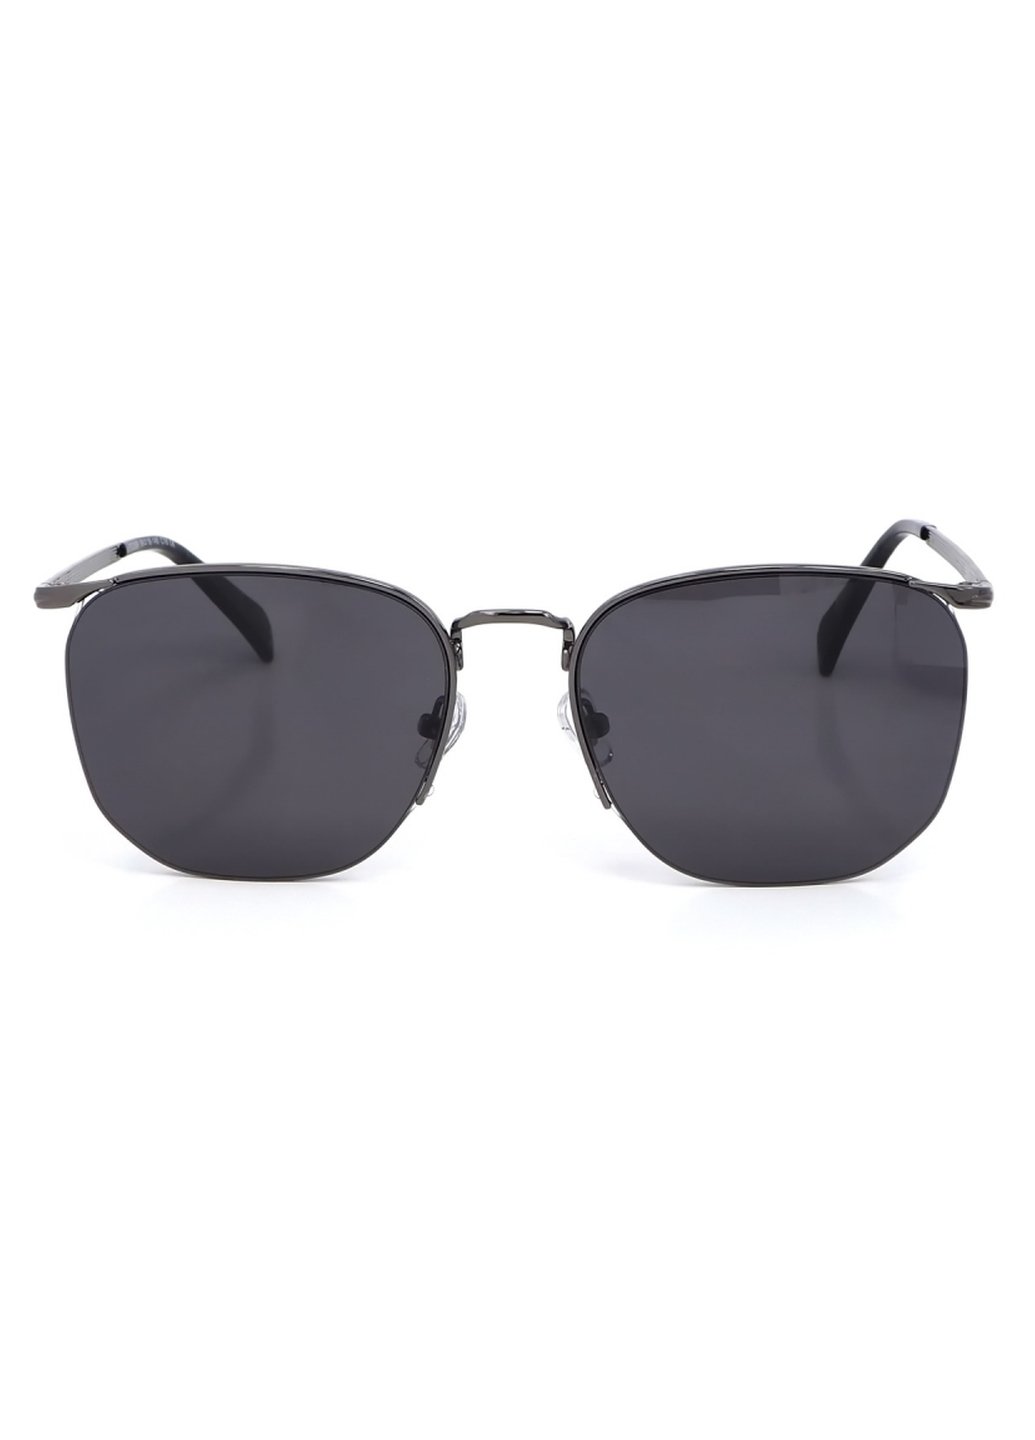 Купить Женские солнцезащитные очки Merlini с поляризацией S31809P 117014 - Черный в интернет-магазине